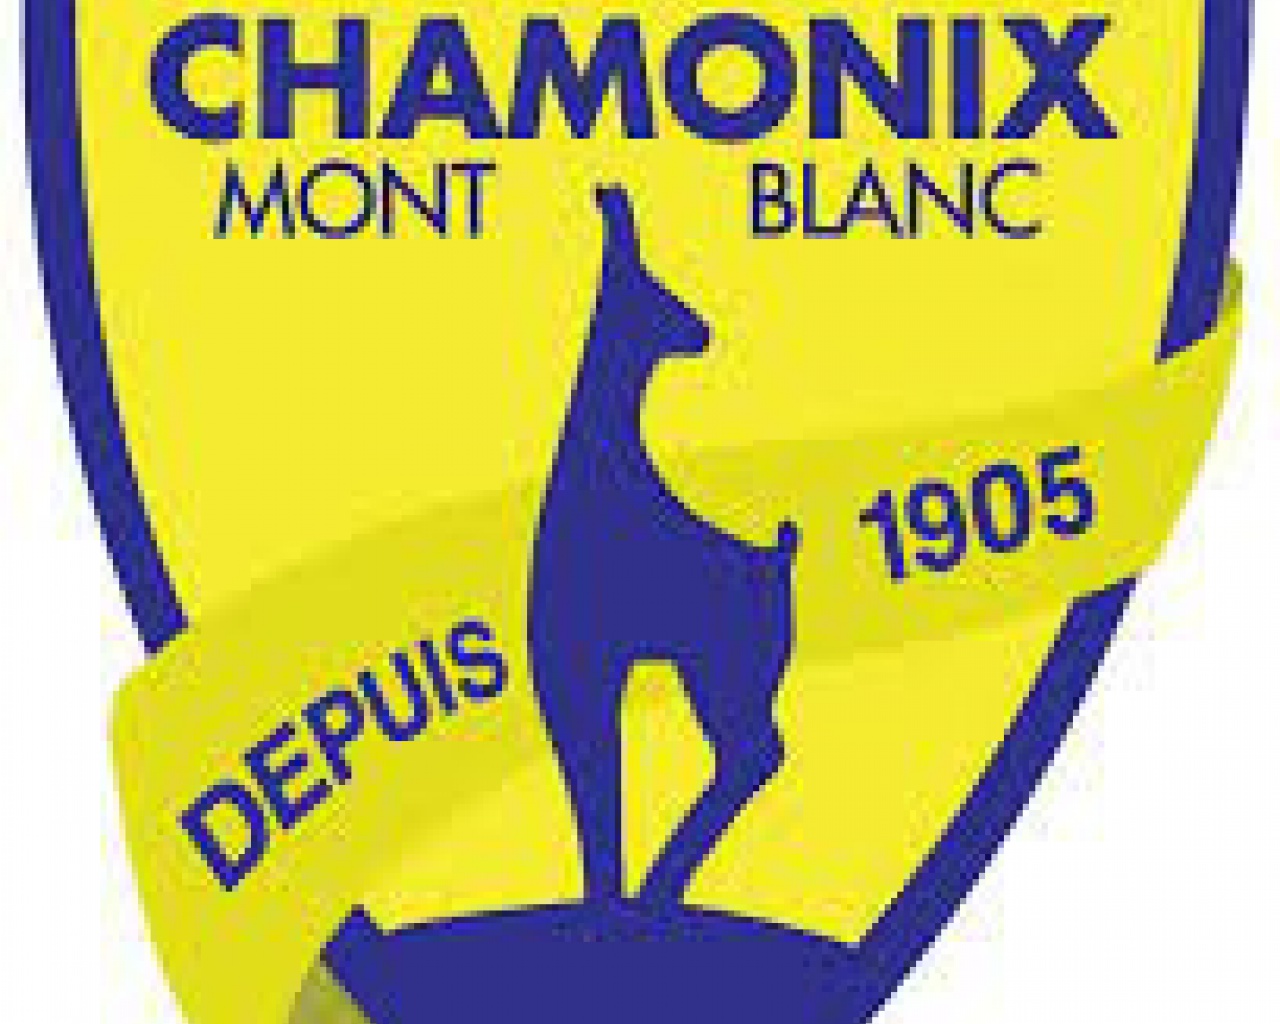 Club des sports de Chamonix